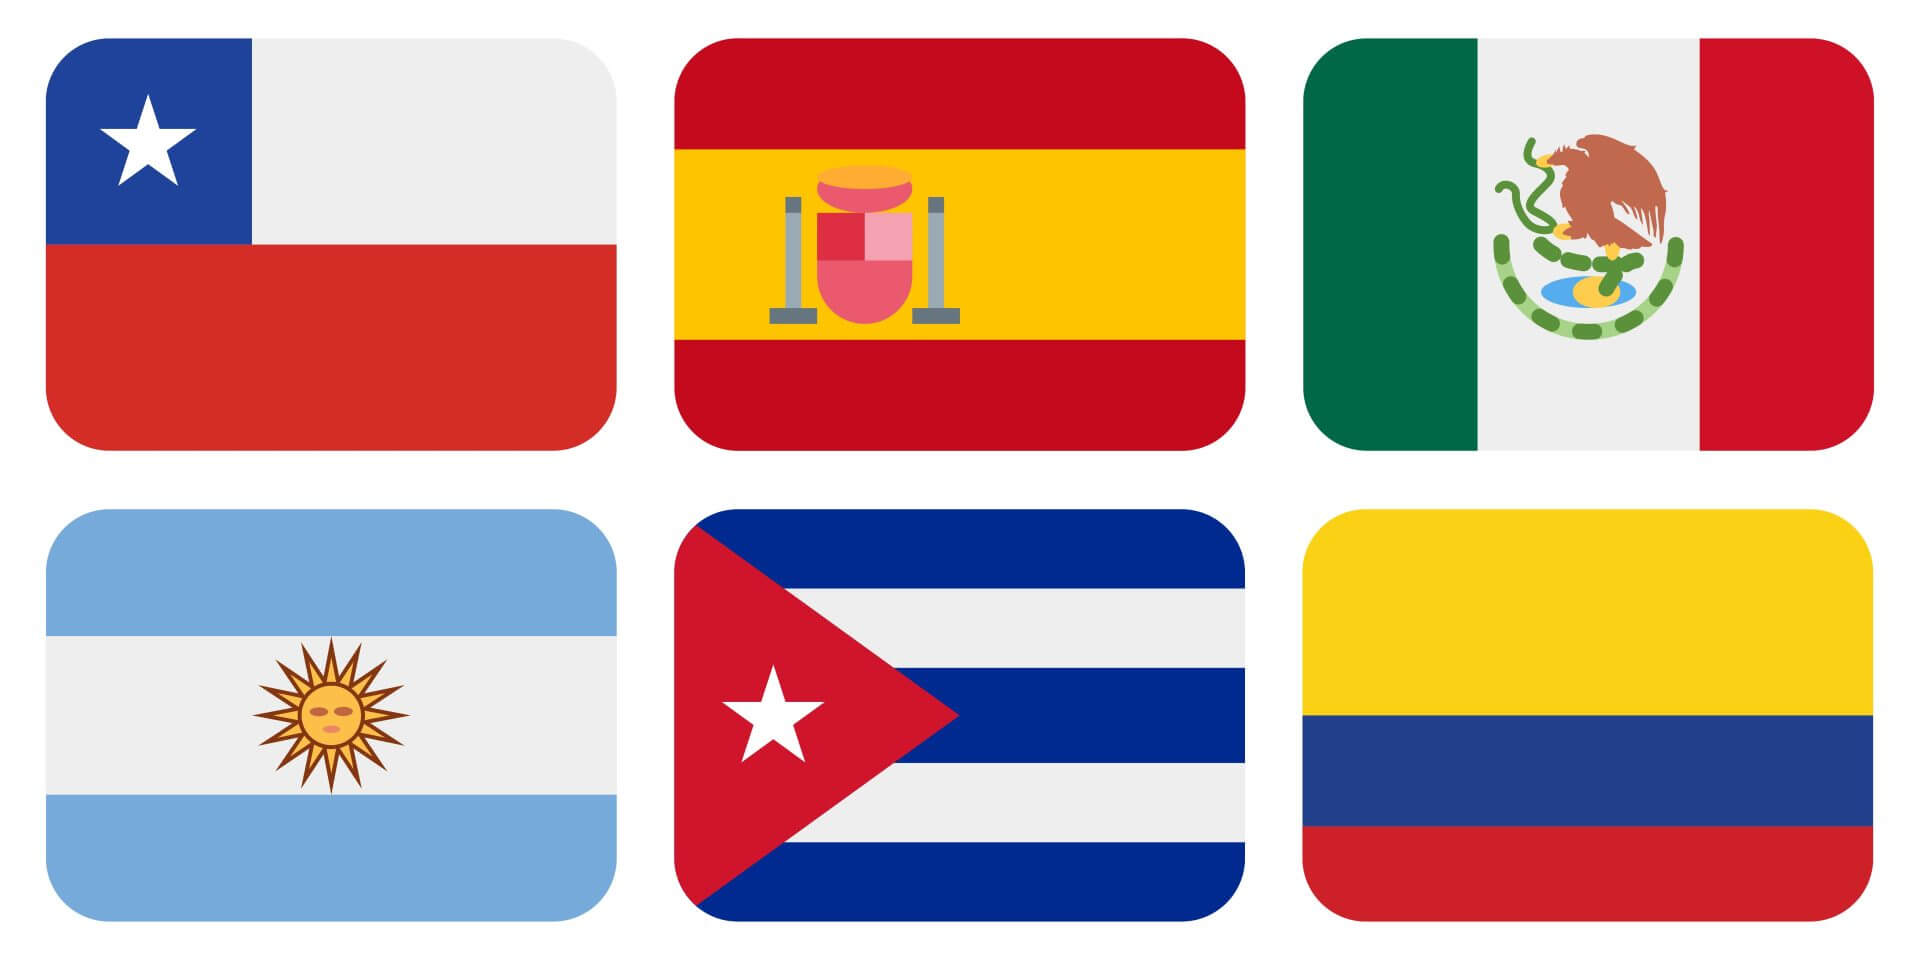 Instituto Hispánico de Murcia - Ken de verschillende accenten van het Spaans over de hele wereld